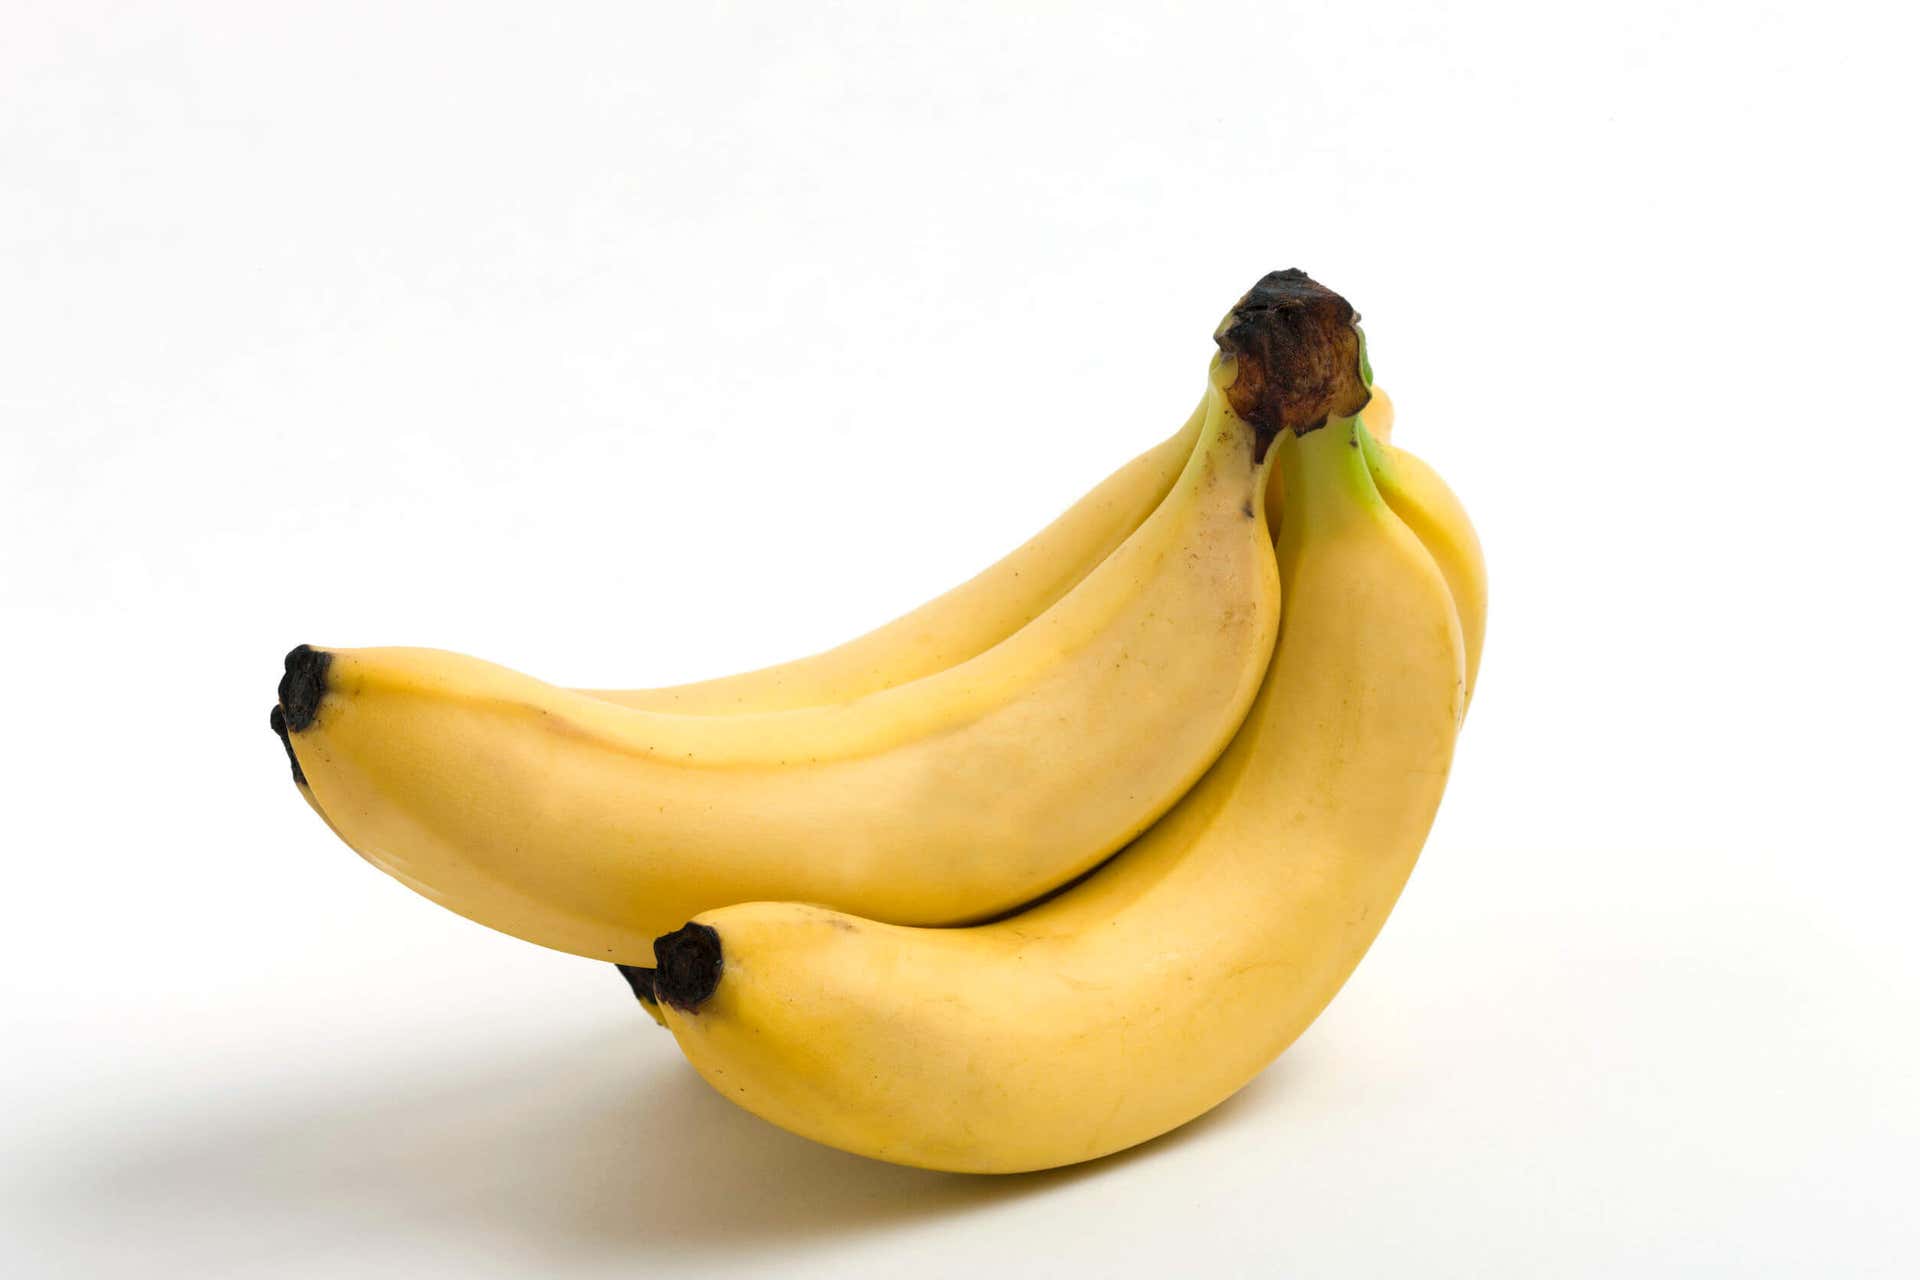 Las las frutas y vegetales incluyen a las bananas.